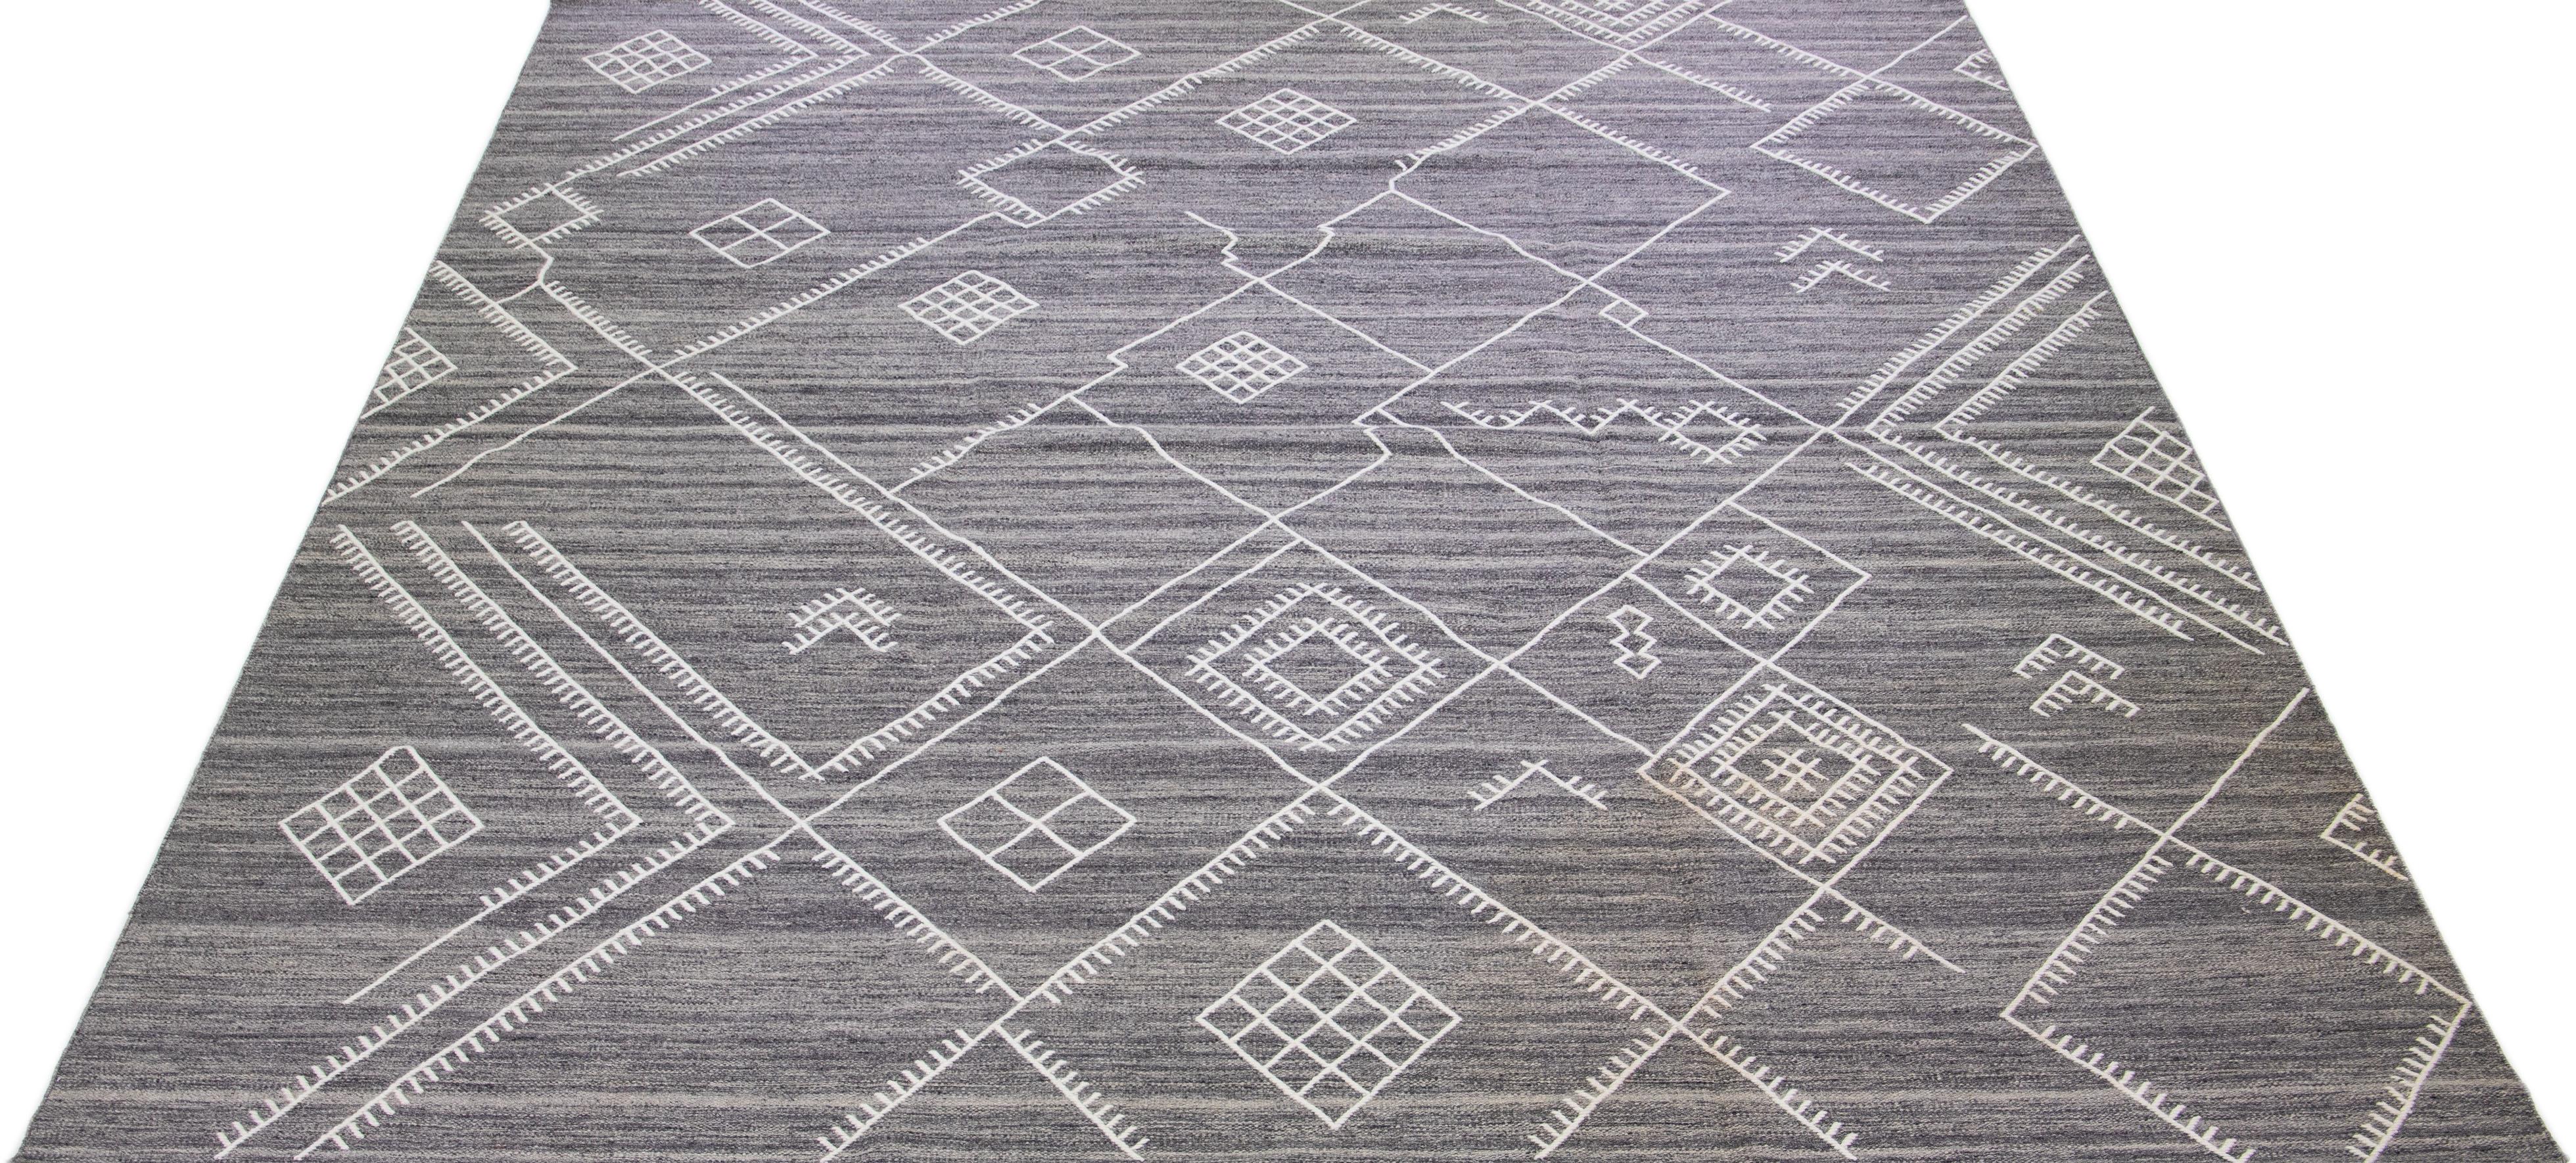 Schöner handgefertigter Kelimteppich aus Wolle mit grauem Feld. Dieser moderne Flachgewebe-Teppich aus unserer Nantucket-Kollektion hat weiße Akzente und ein wunderschönes, geometrisches Küstendesign.

Dieser Teppich misst: 12'7